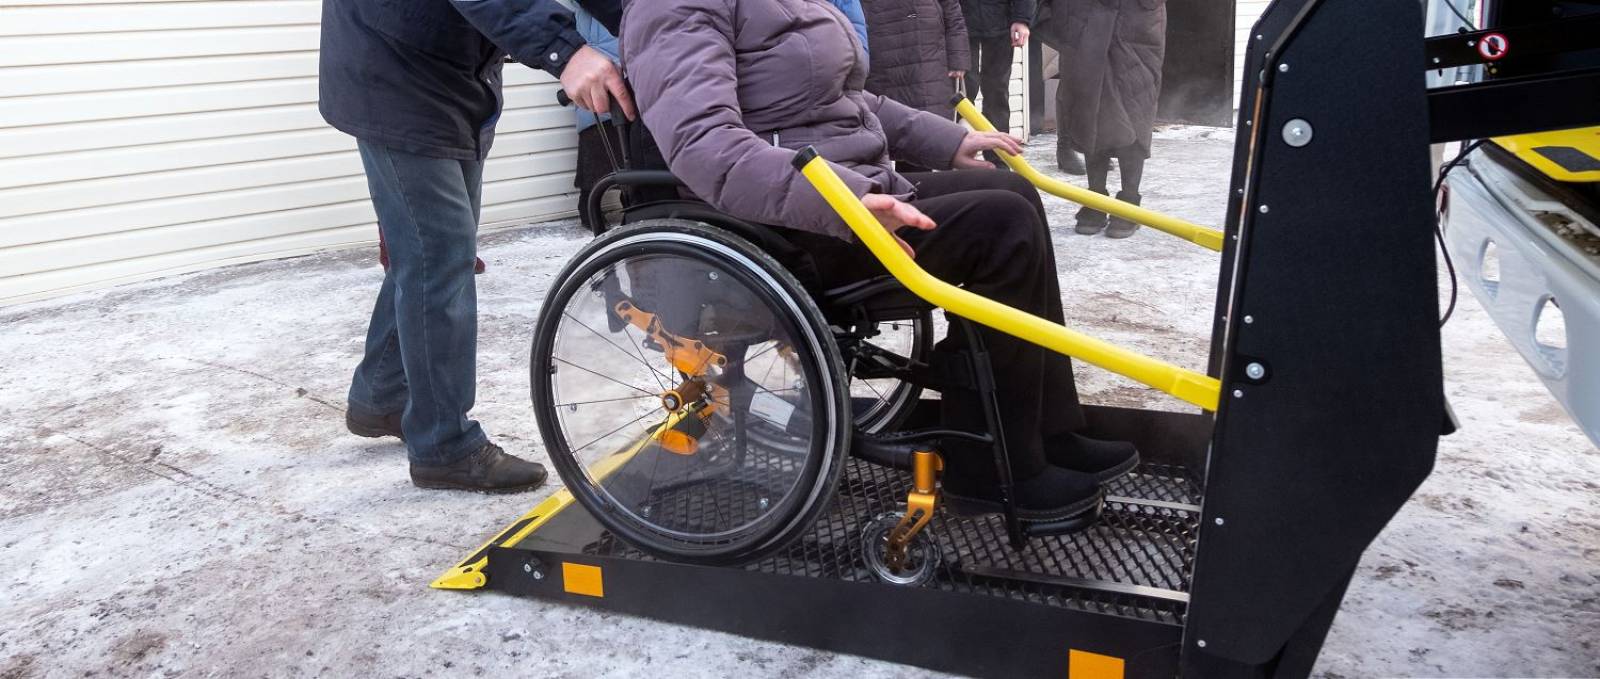 Aménagement véhicule pour handicapé